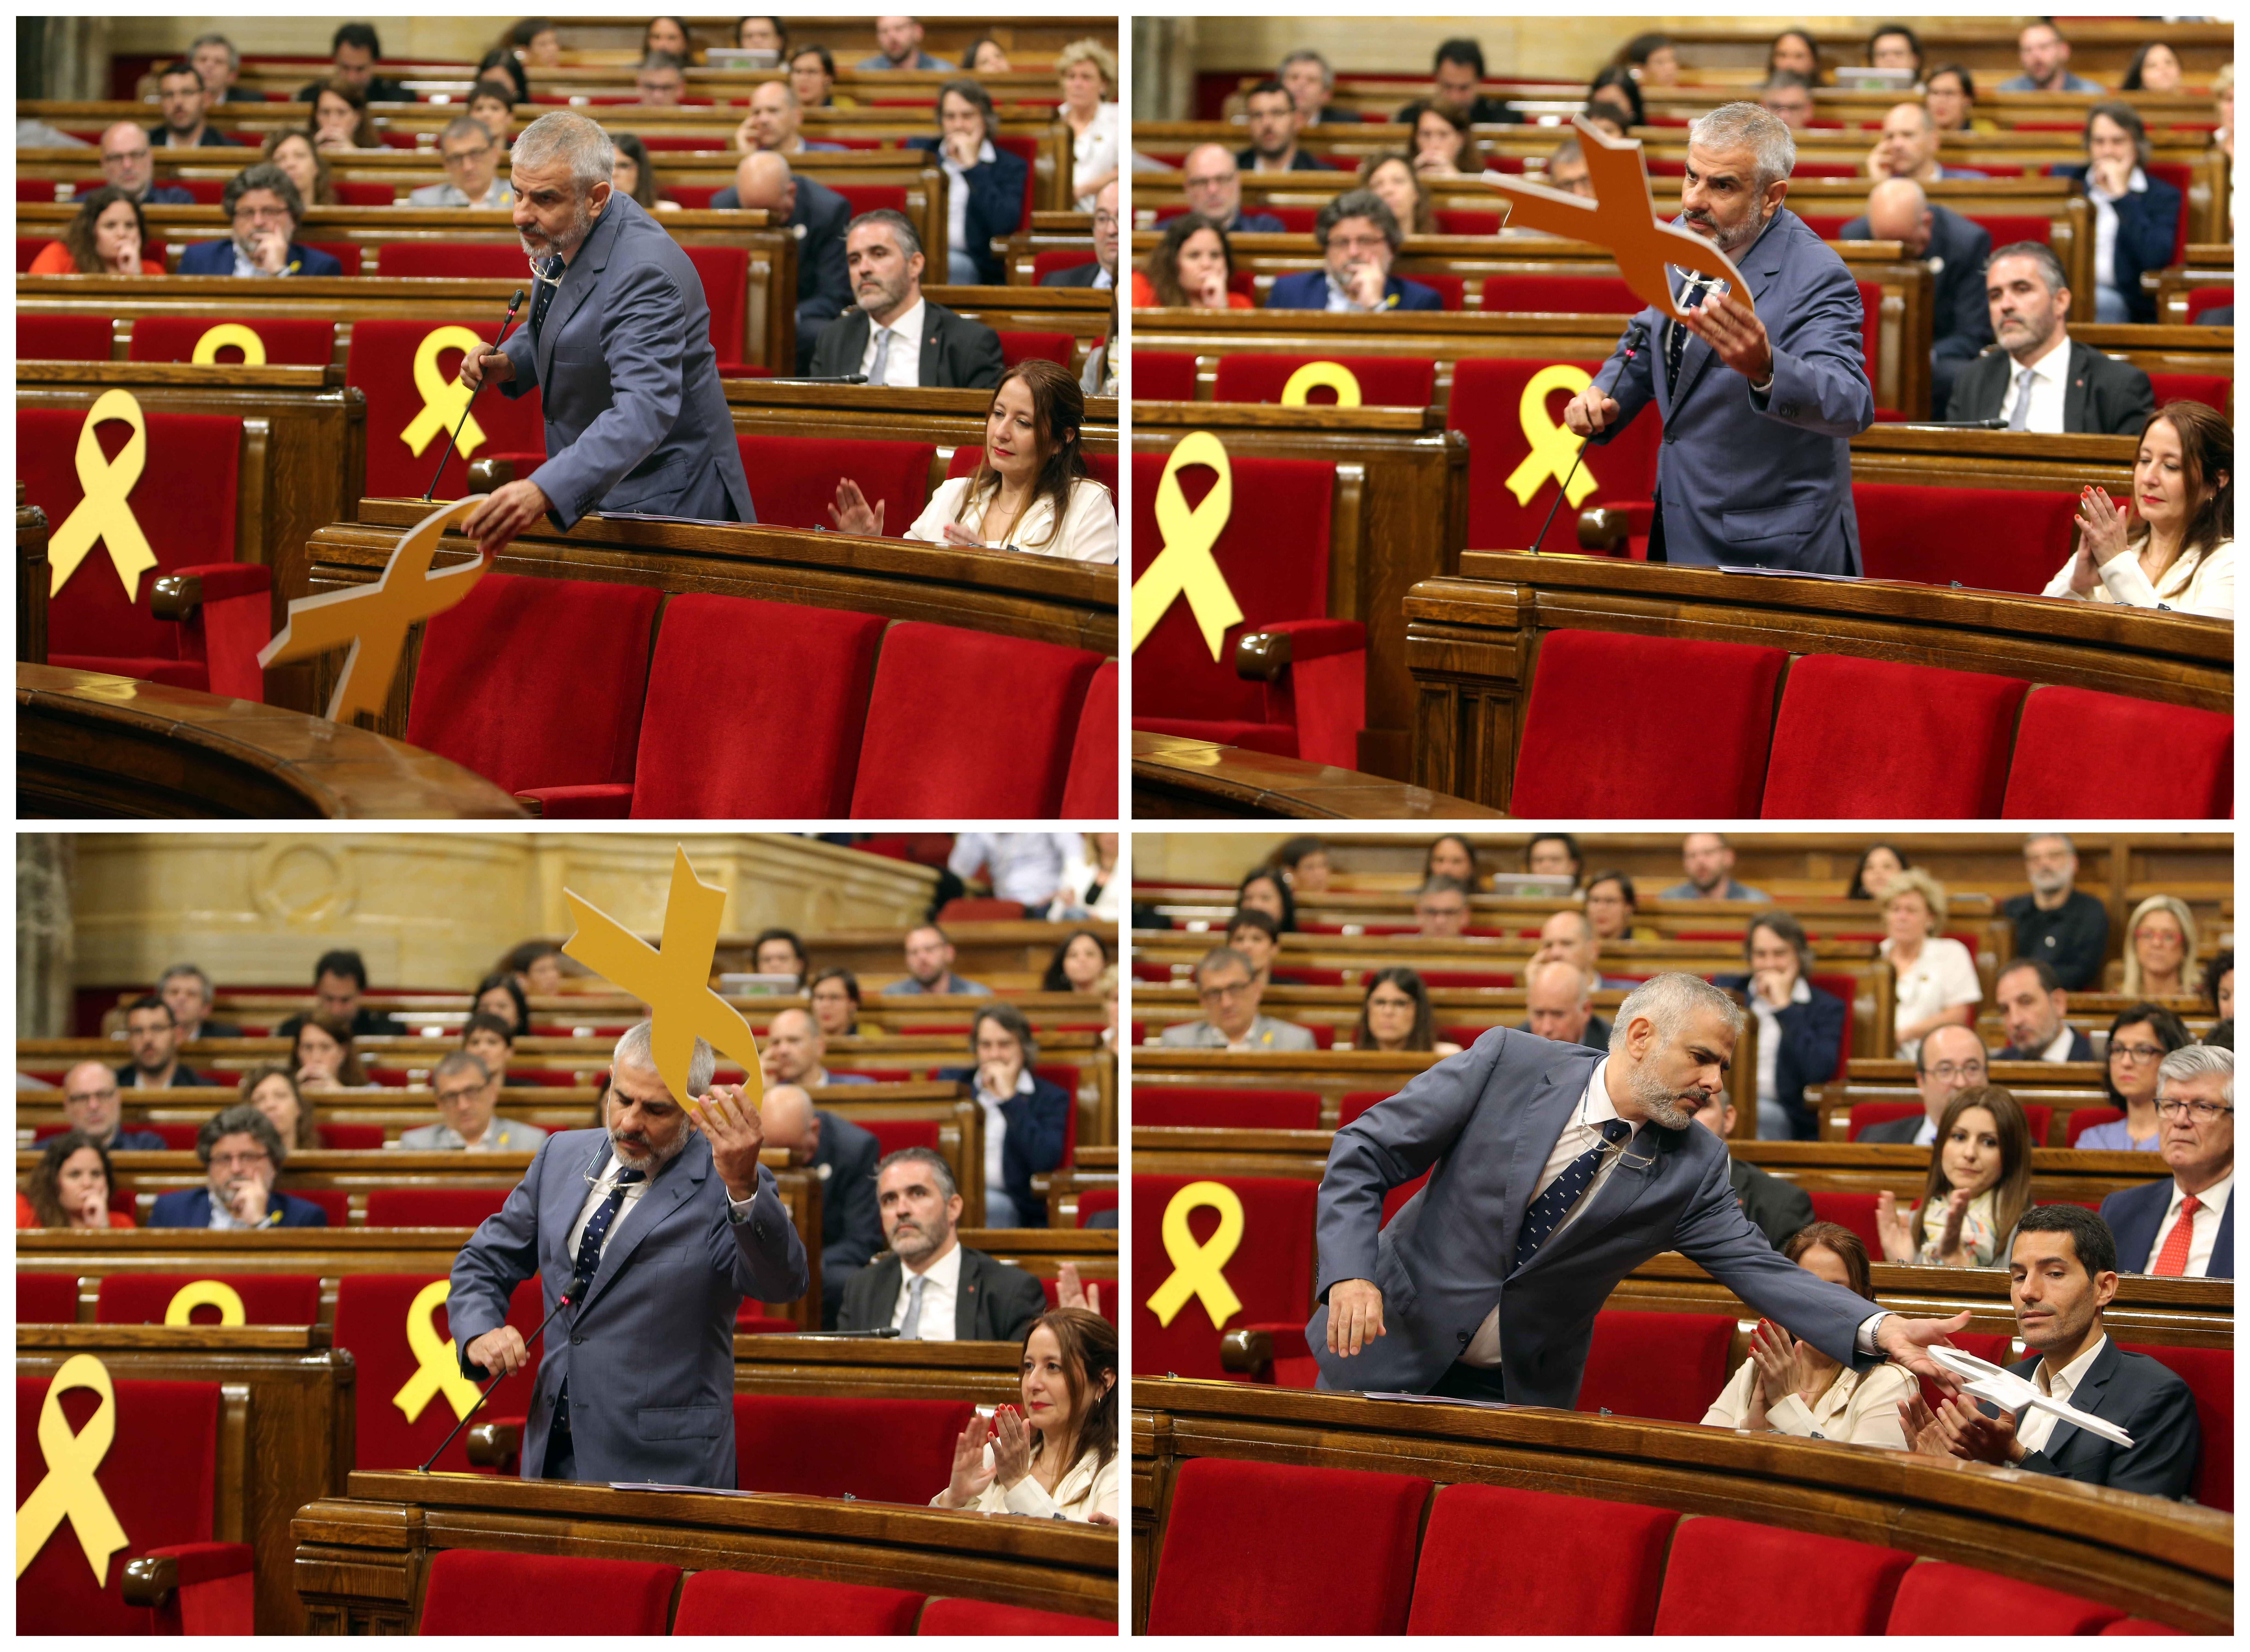 VIDEO: El numerito de Carrizosa con el lazo amarillo en el Parlament